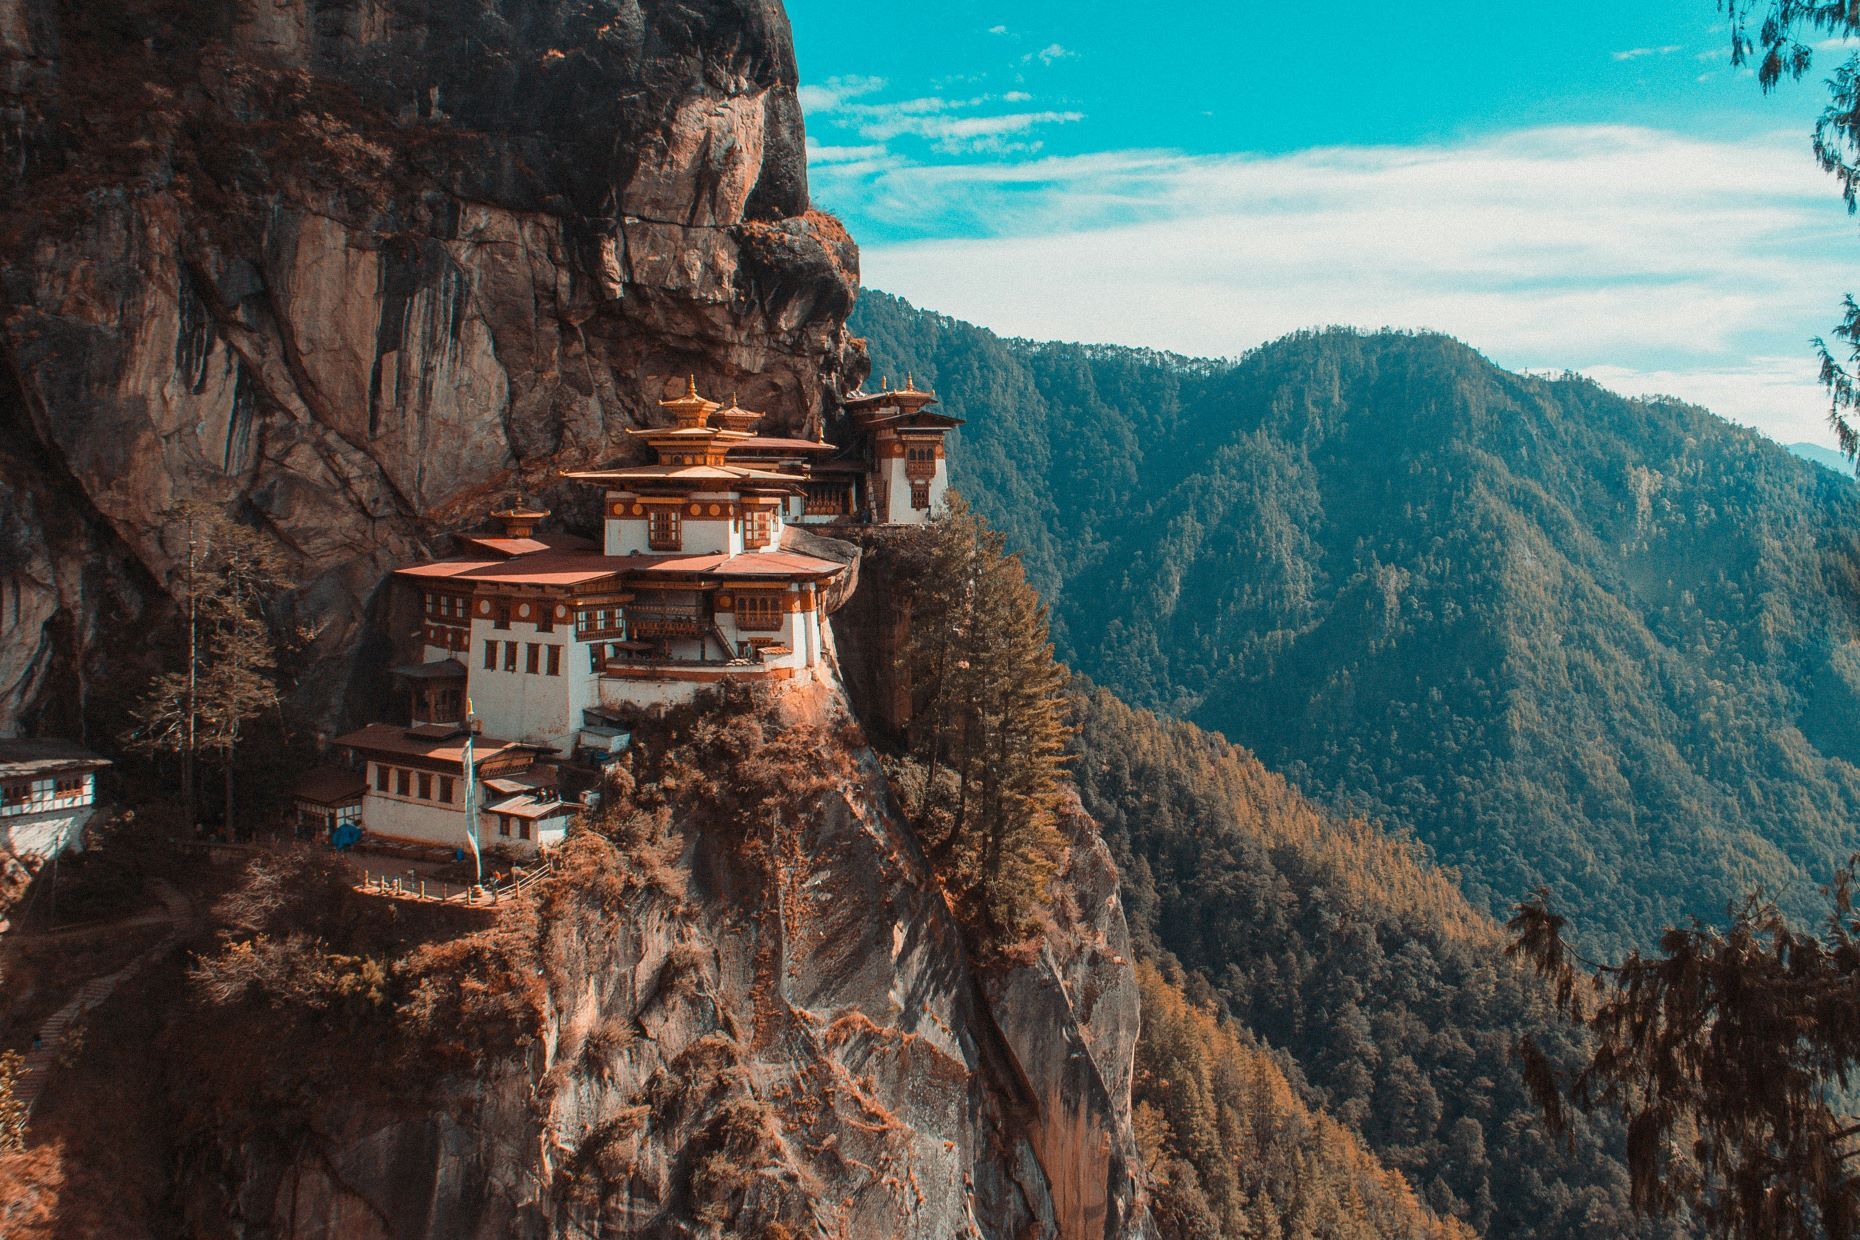 <p>Le mystérieux pays du <a href="https://www.voyageursdumonde.ca/voyage-sur-mesure/voyages/guide-voyage/bhoutan" class="CMY_Link CMY_Valid" rel="noreferrer noopener">Bhoutan</a> est un véritable joyau caché. Ce pays calme et d’une beauté saisissante est niché dans le centre-sud de l’Asie, dans le majestueux Himalaya. Il est difficile de croire qu’un pays aux paysages aussi époustouflants et uniques que le Bhoutan ne croule pas déjà sous les touristes. Le pays est connu pour son sens aigu de la communauté et sa longue et riche histoire, et les visiteurs peuvent s’attendre à être bien accueillis et vite immergés dans les traditions du pays. Attendez-vous à voir des villages agricoles pittoresques, des monastères bouddhistes et d’innombrables panoramas spectaculaires. </p>